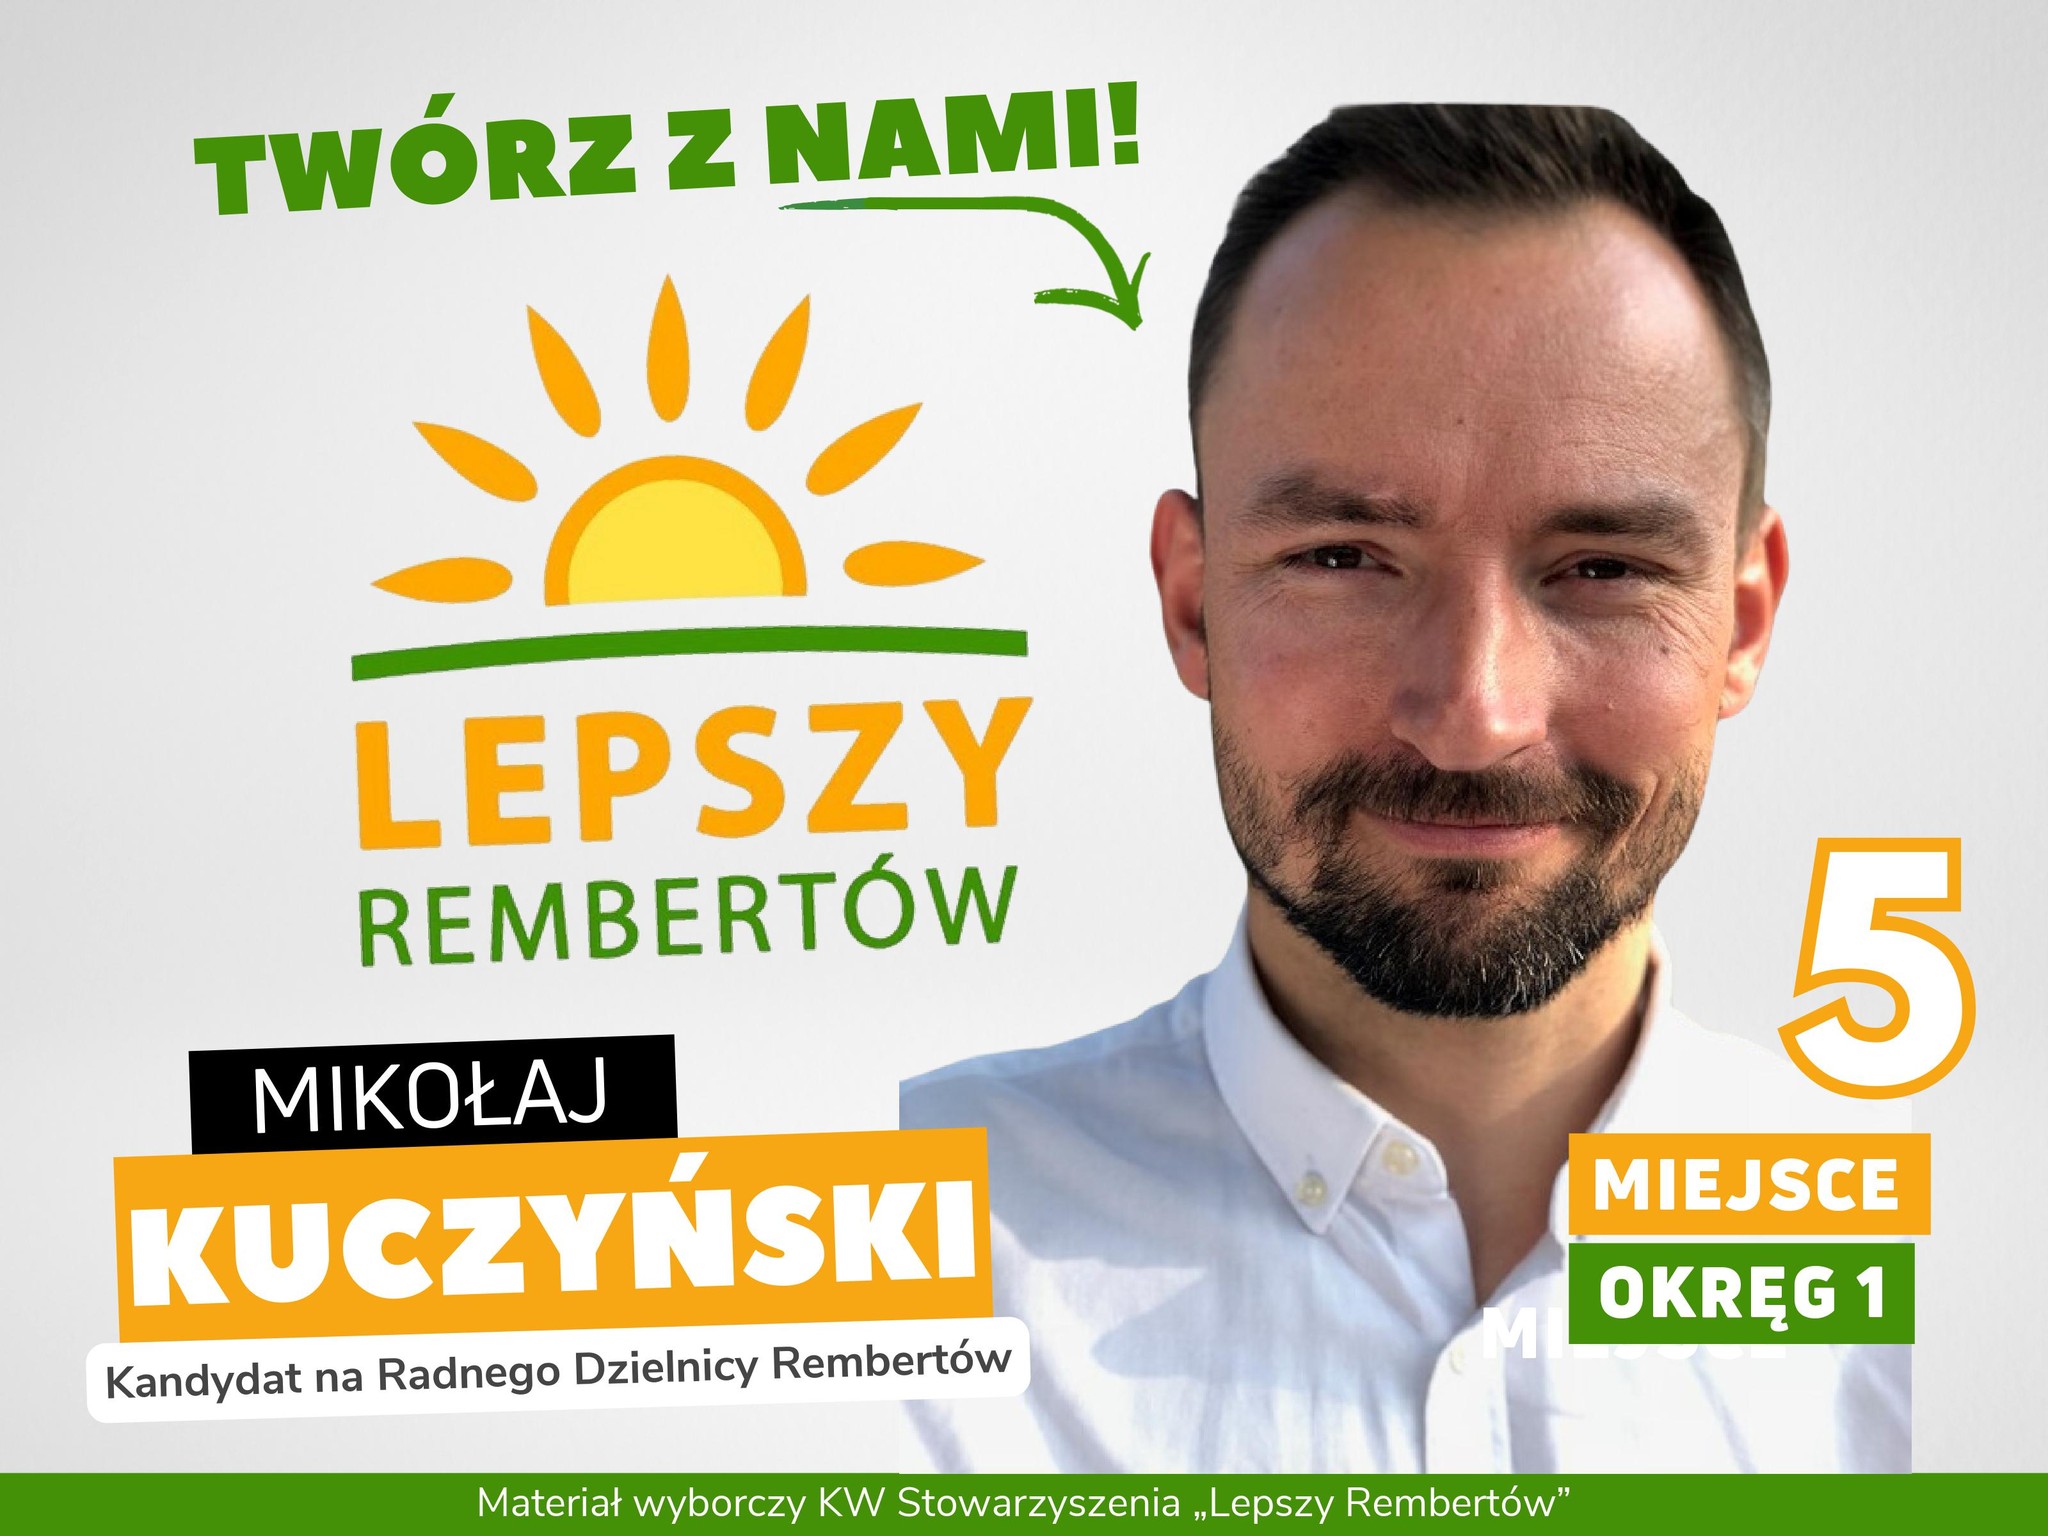 Mikołaj Kuczyński Okręg 1 miejsce 5